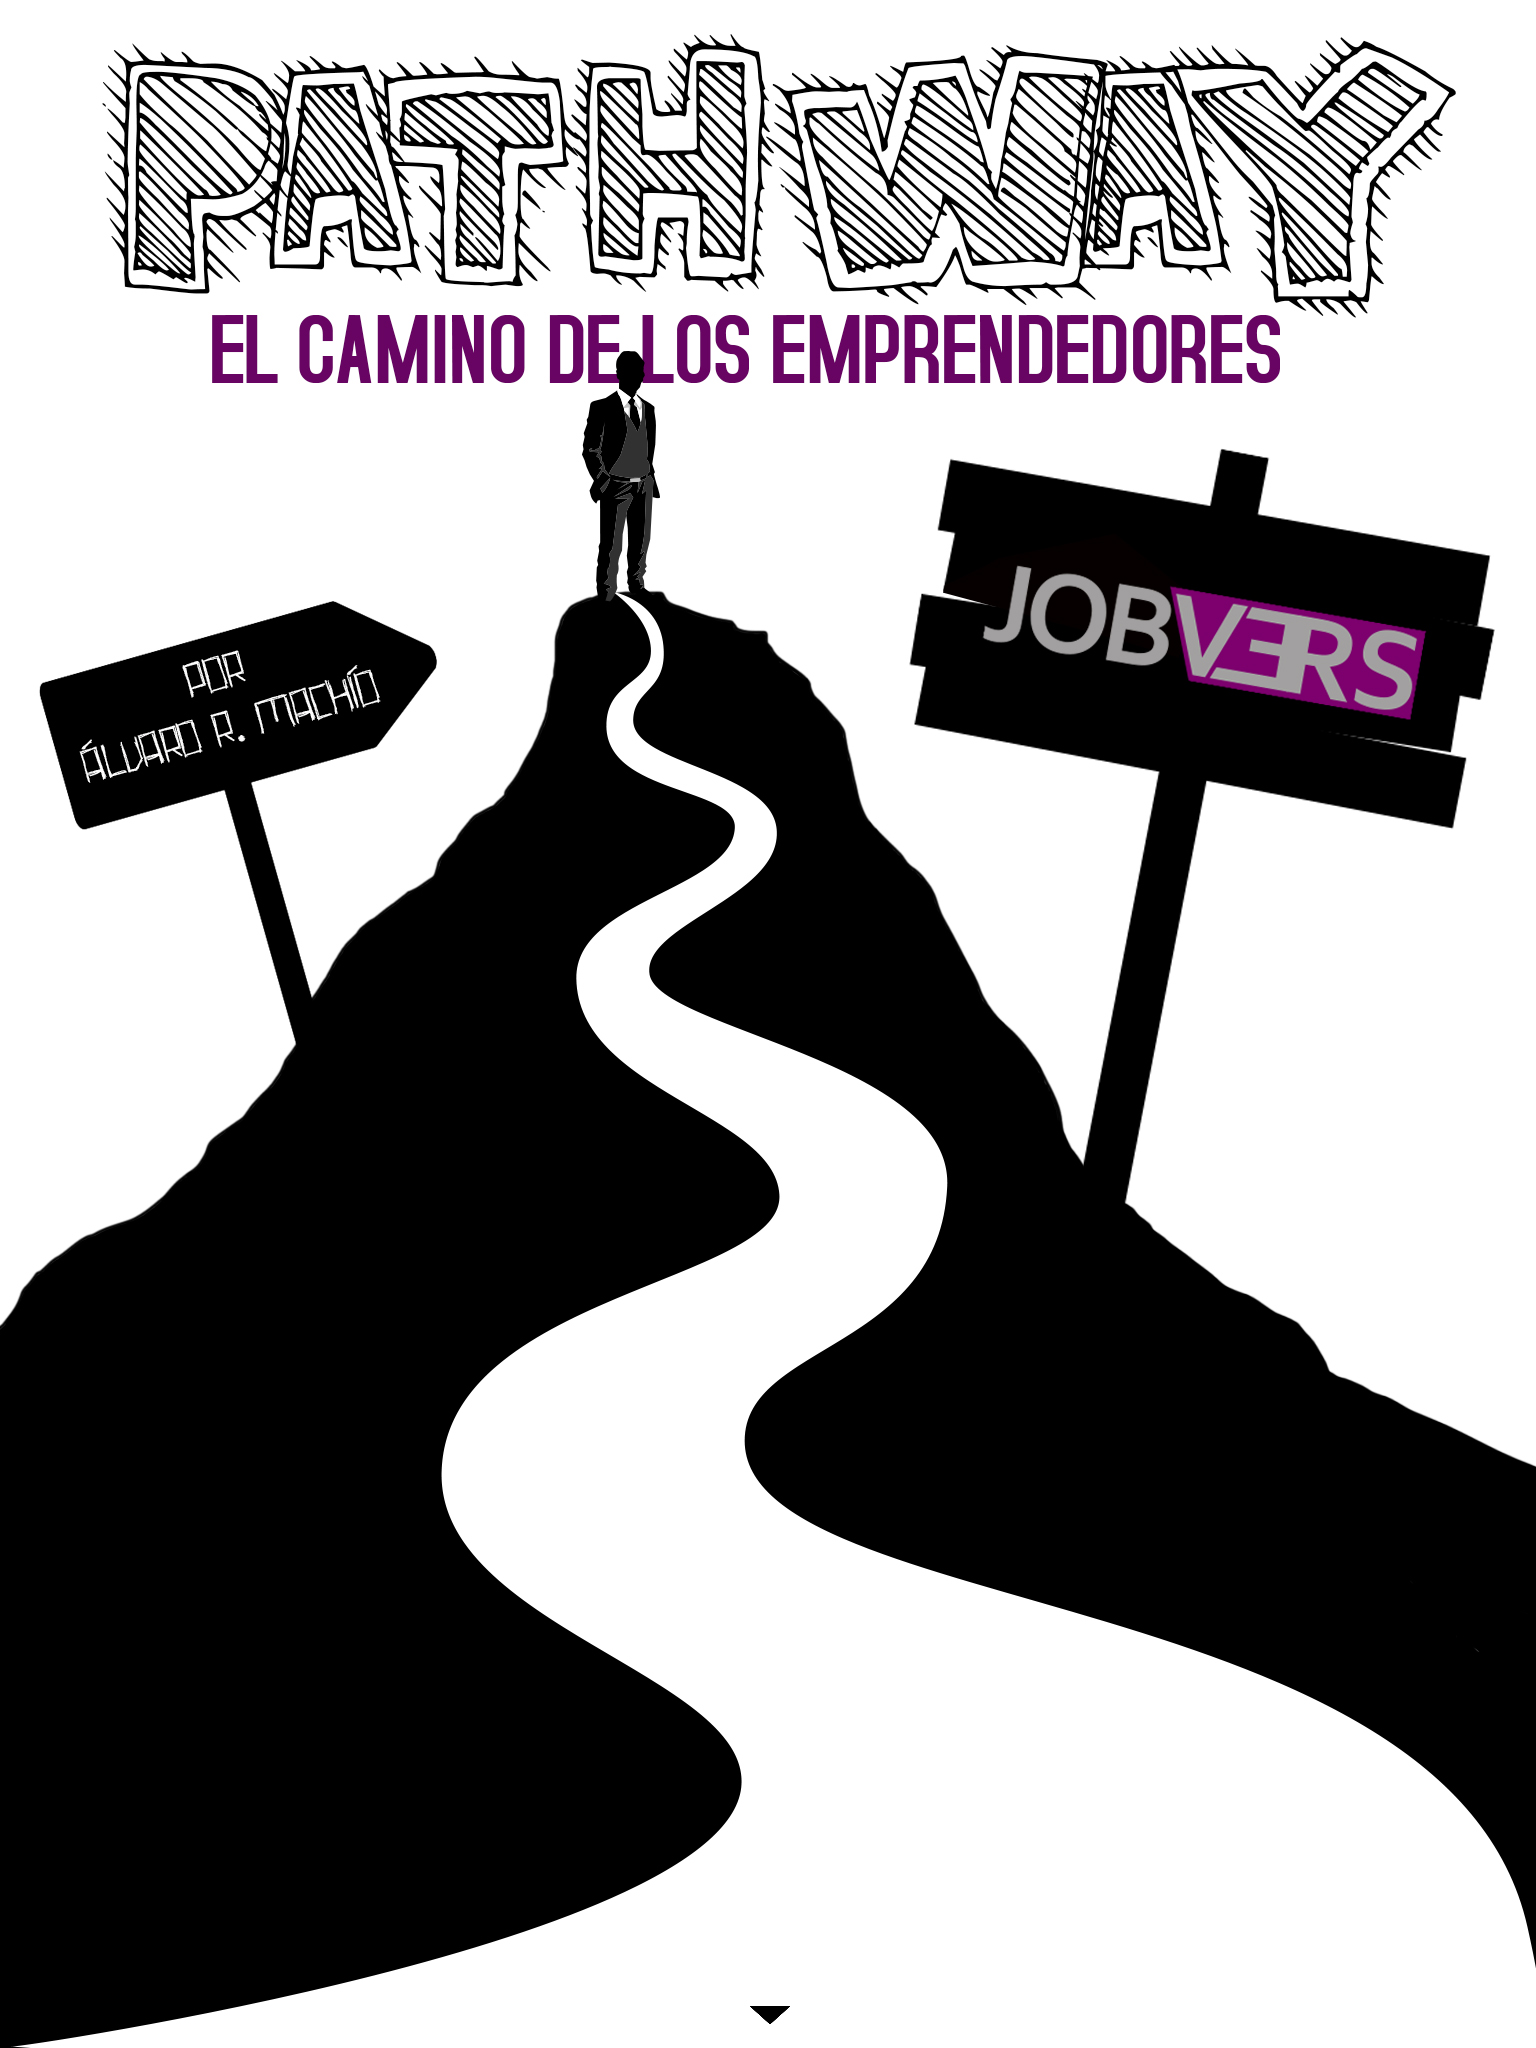 pathway, el camino de los emprendedores: jobvers. Continúa abajo el artículo